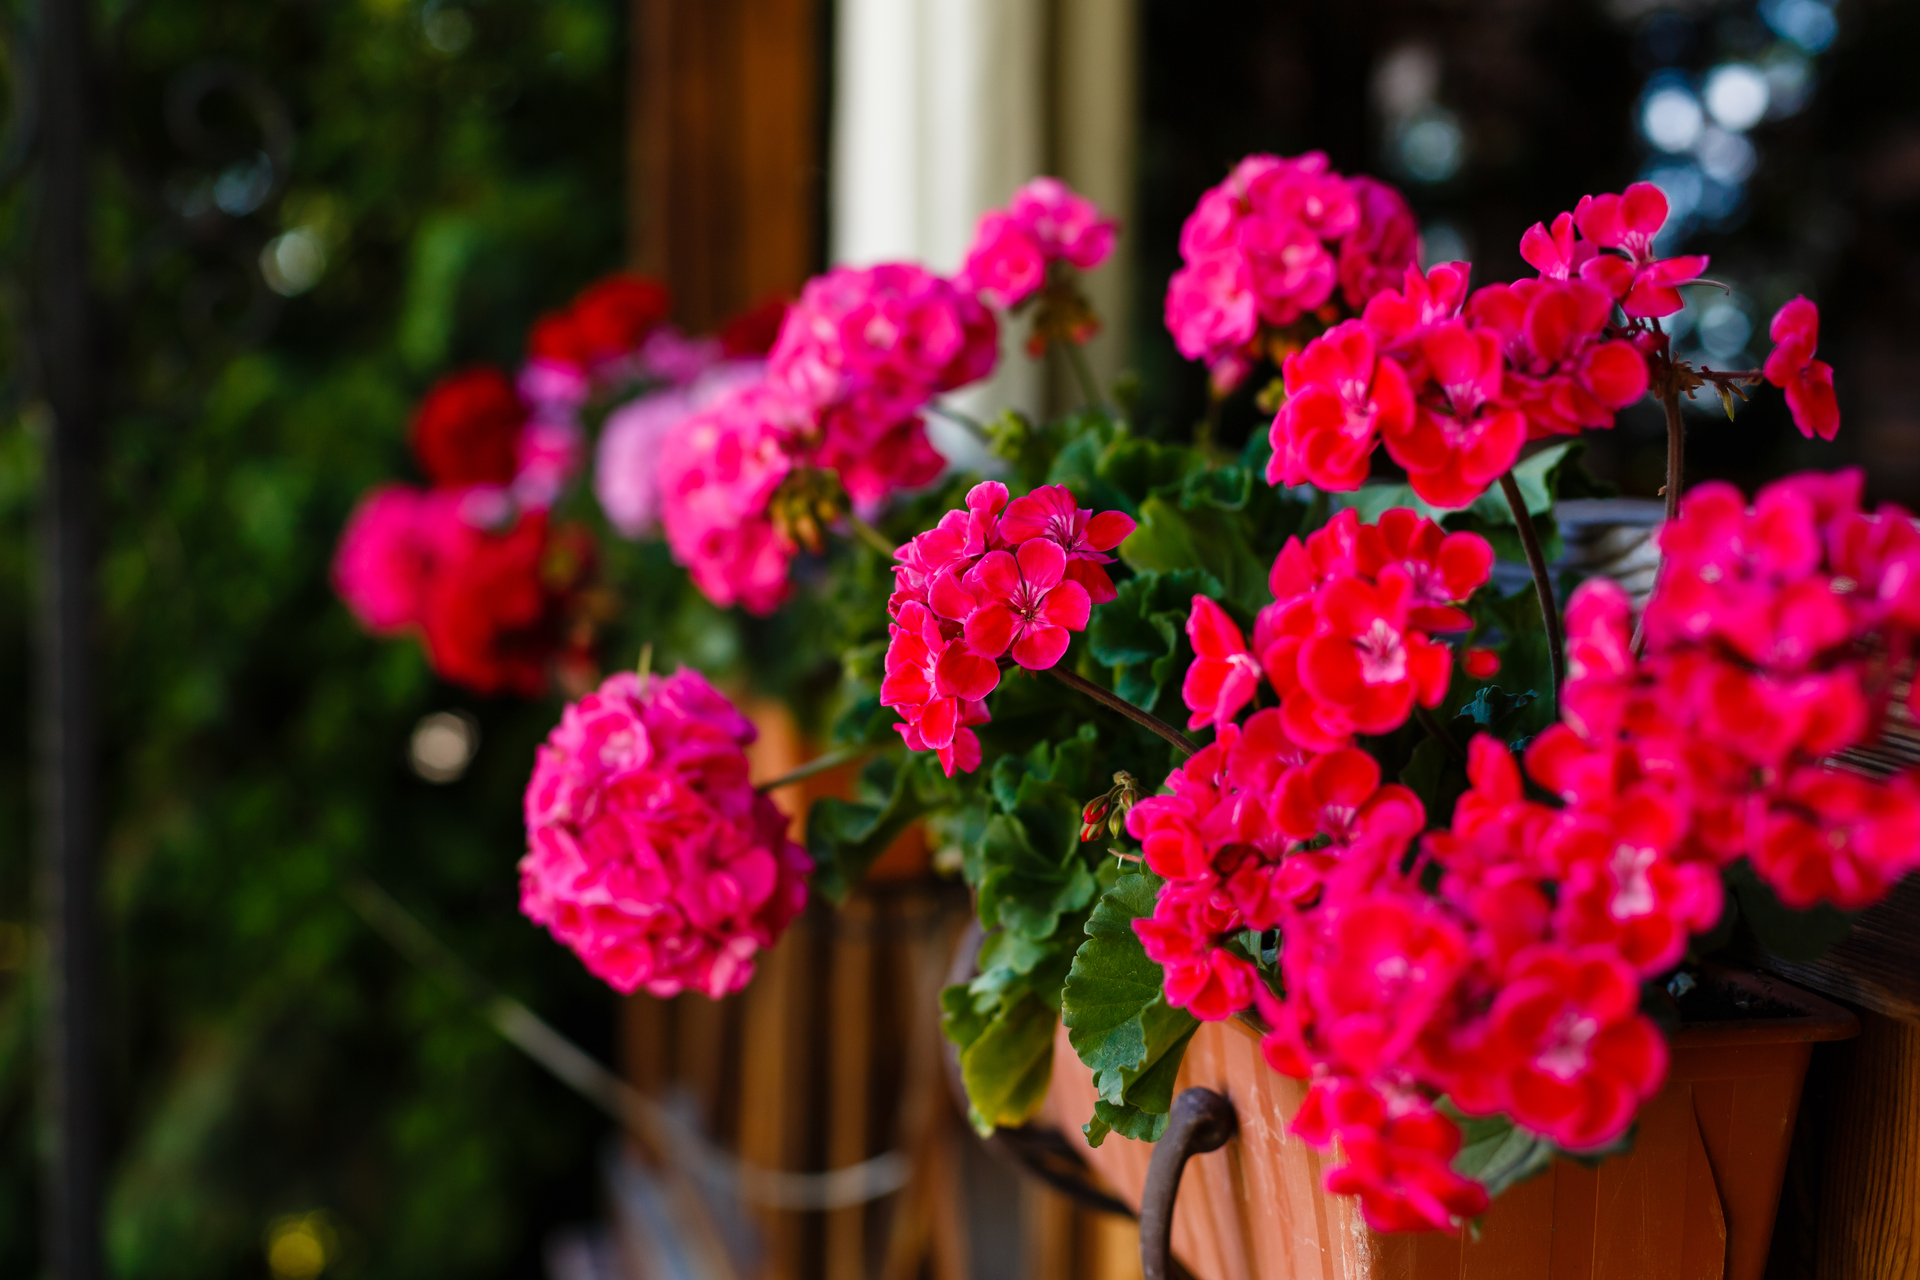 Wspaniałe pelargonie to kwiaty doniczkowe, które ożywią każde wnętrze swoim intensywnym kolorem i pięknym zapachem. Na naszym obrazku zobaczysz bujne, zdrowe rośliny, które dodadzą uroku Twojemu domowi. Przekonaj się, jak łatwo zadbać o te popularne kwiaty i ciesz się ich urodą przez cały rok!